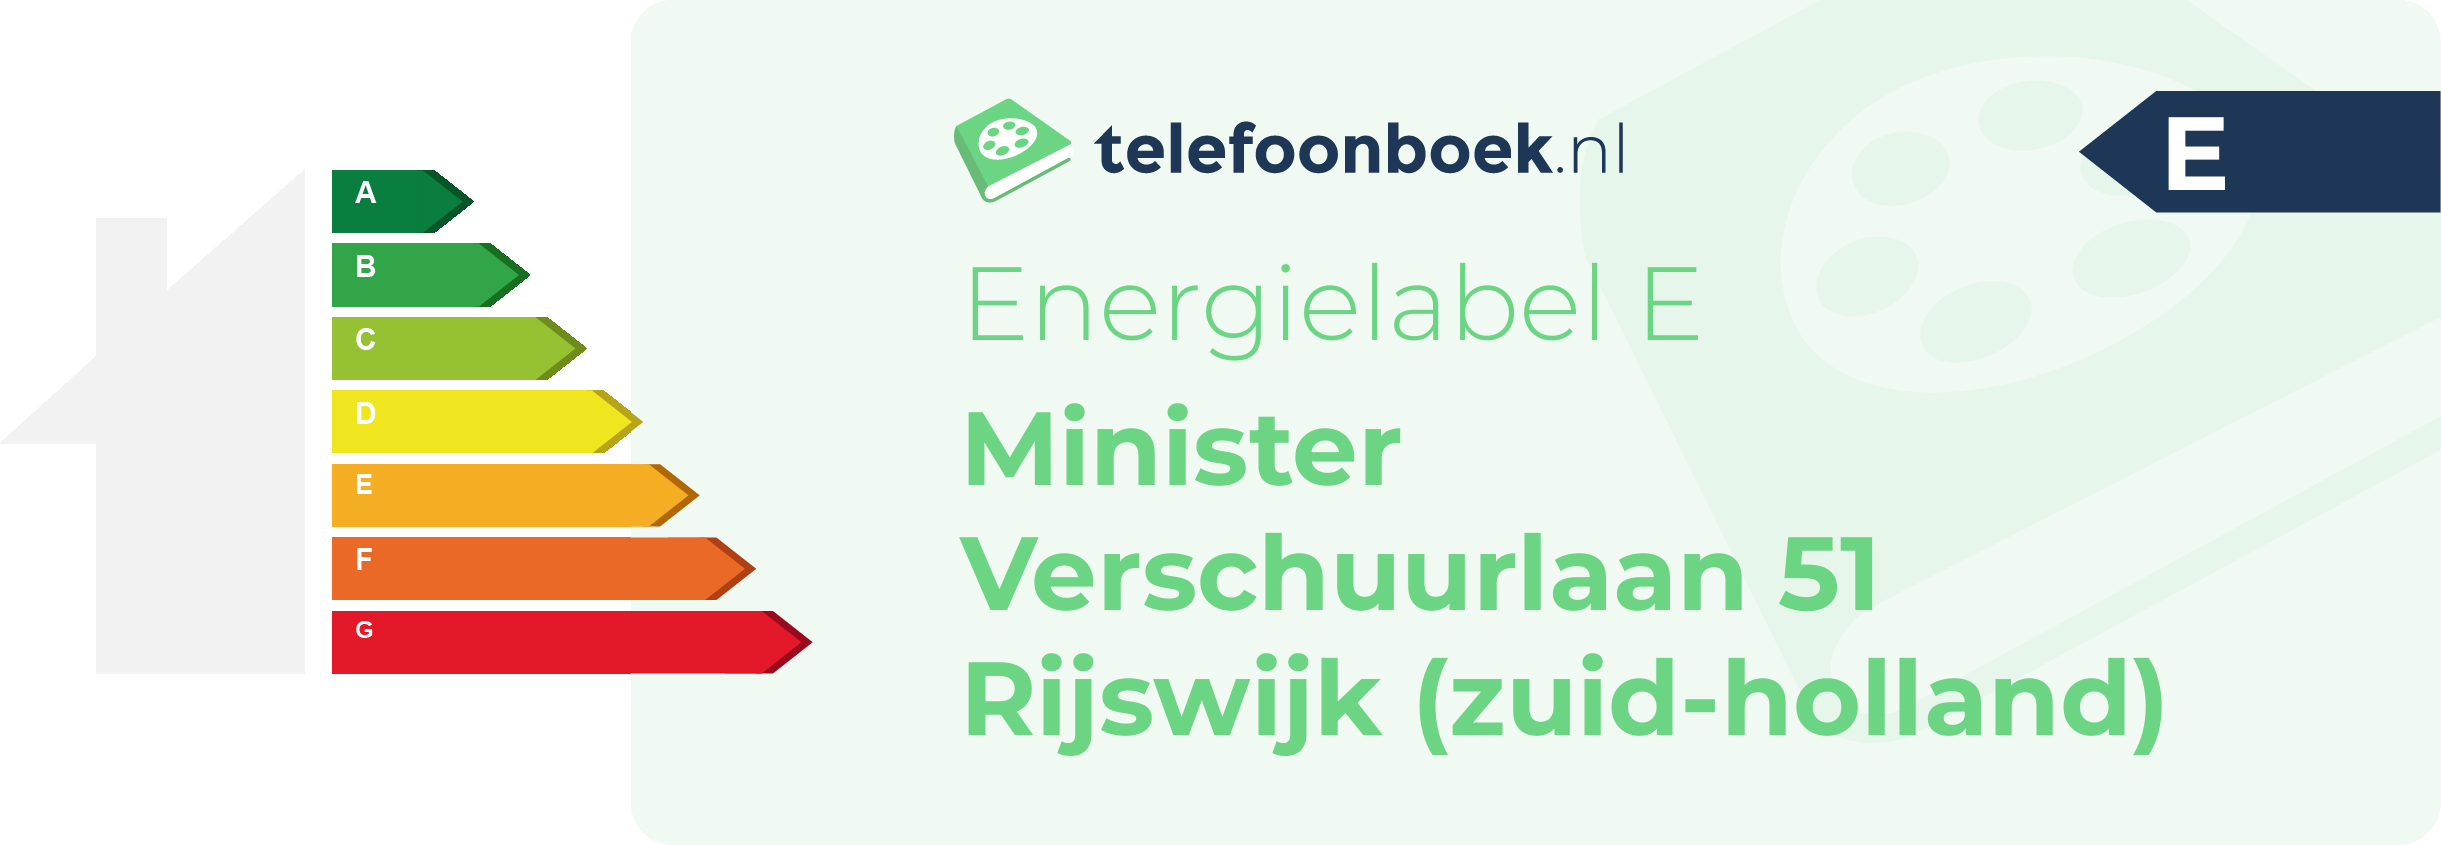 Energielabel Minister Verschuurlaan 51 Rijswijk (Zuid-Holland)